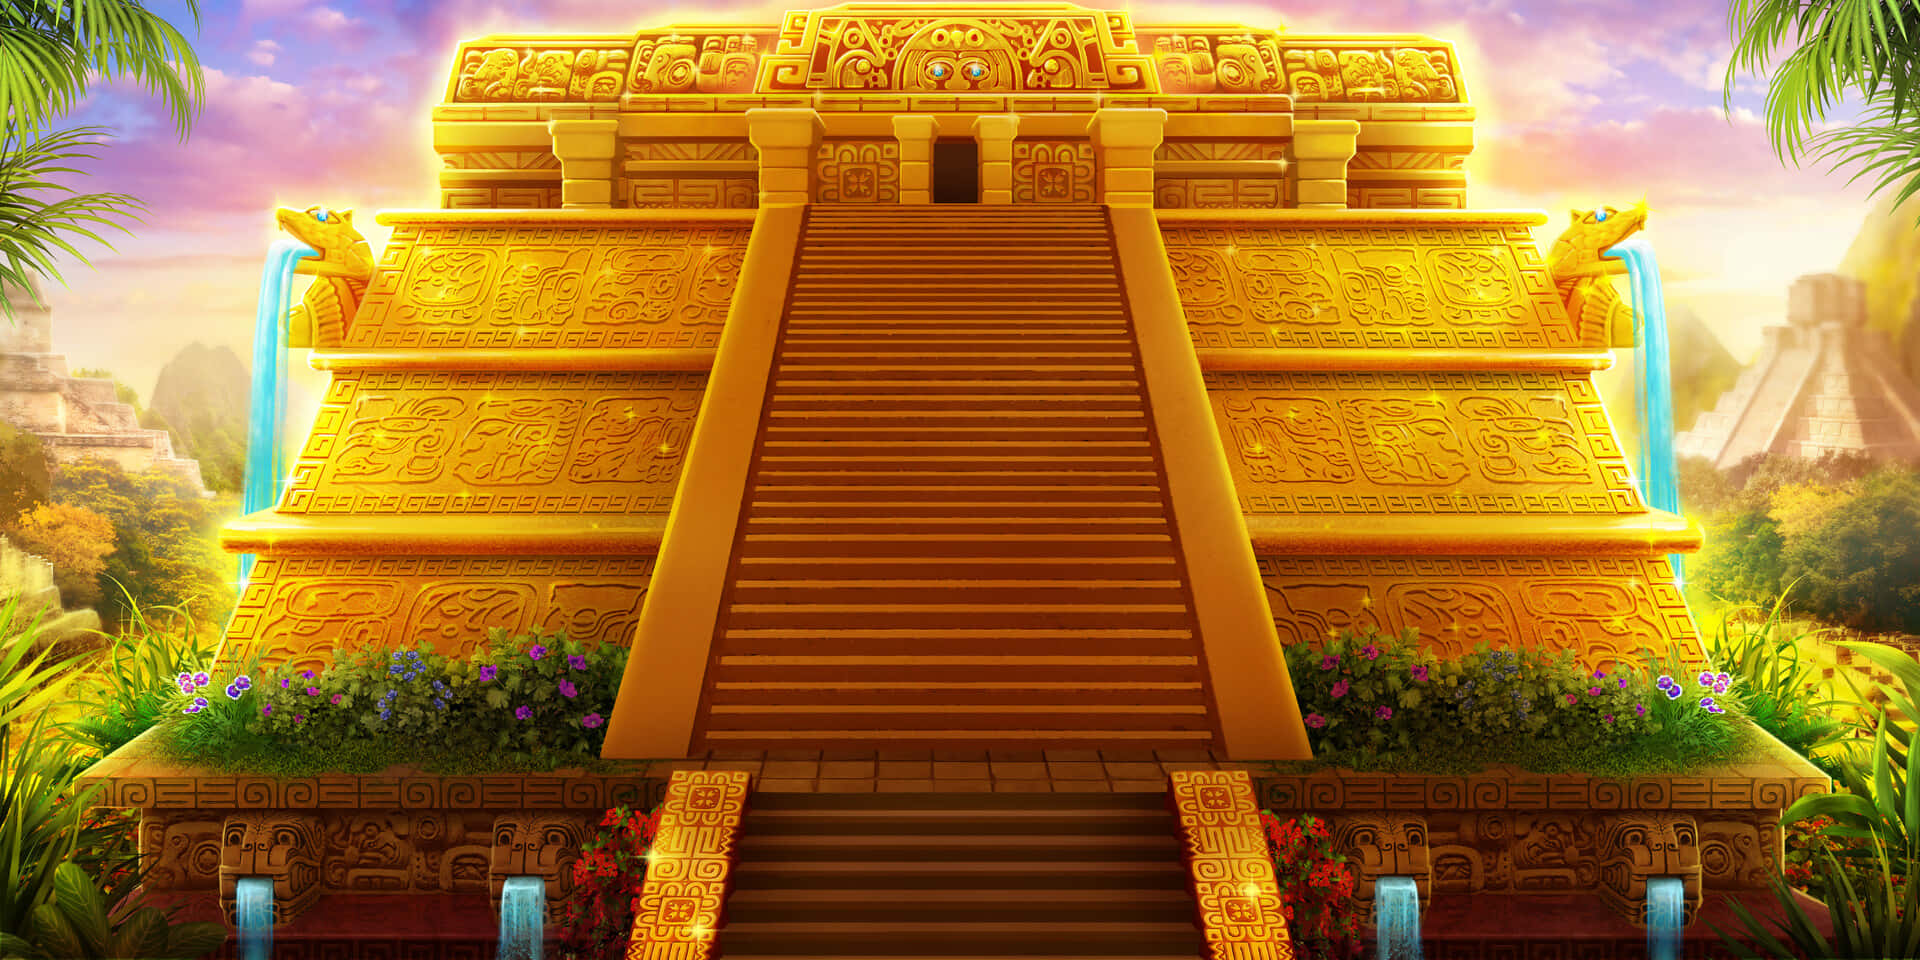 Unhermoso Amanecer Emanando De La Imponente Fachada De Un Magnífico Templo.